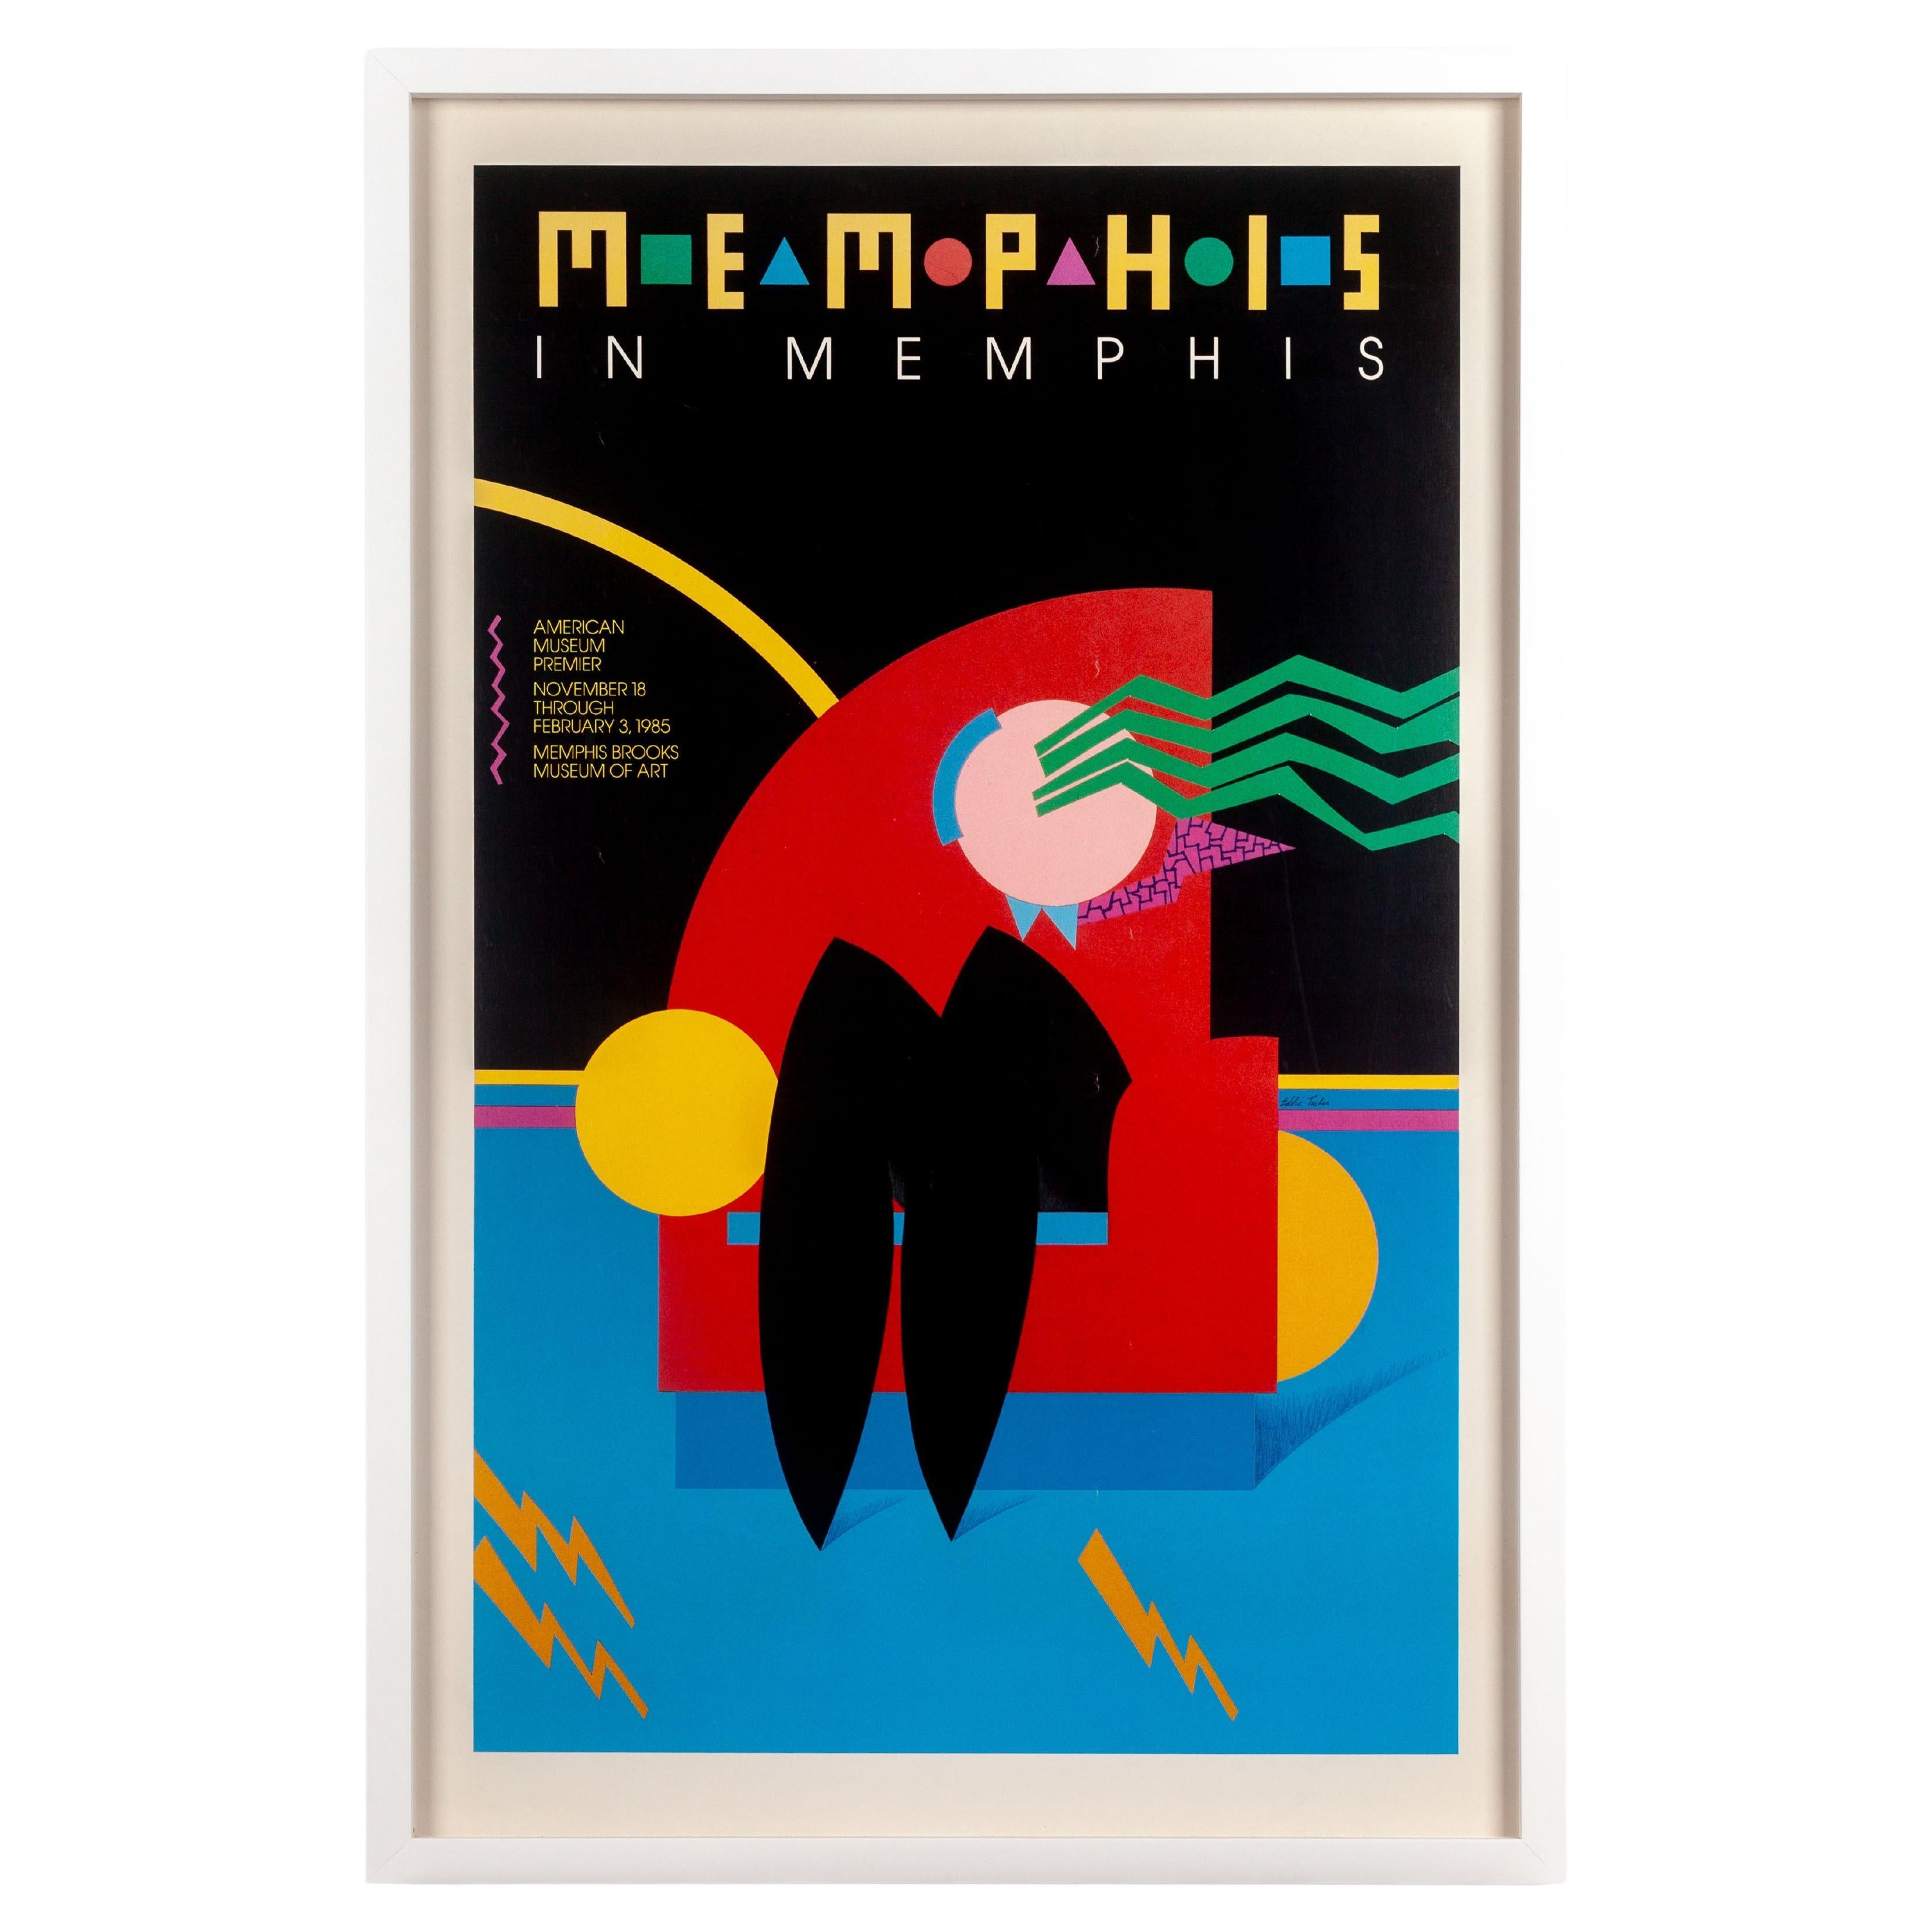 Poster della mostra Memphis In Memphis, 1985, incorniciato in vendita